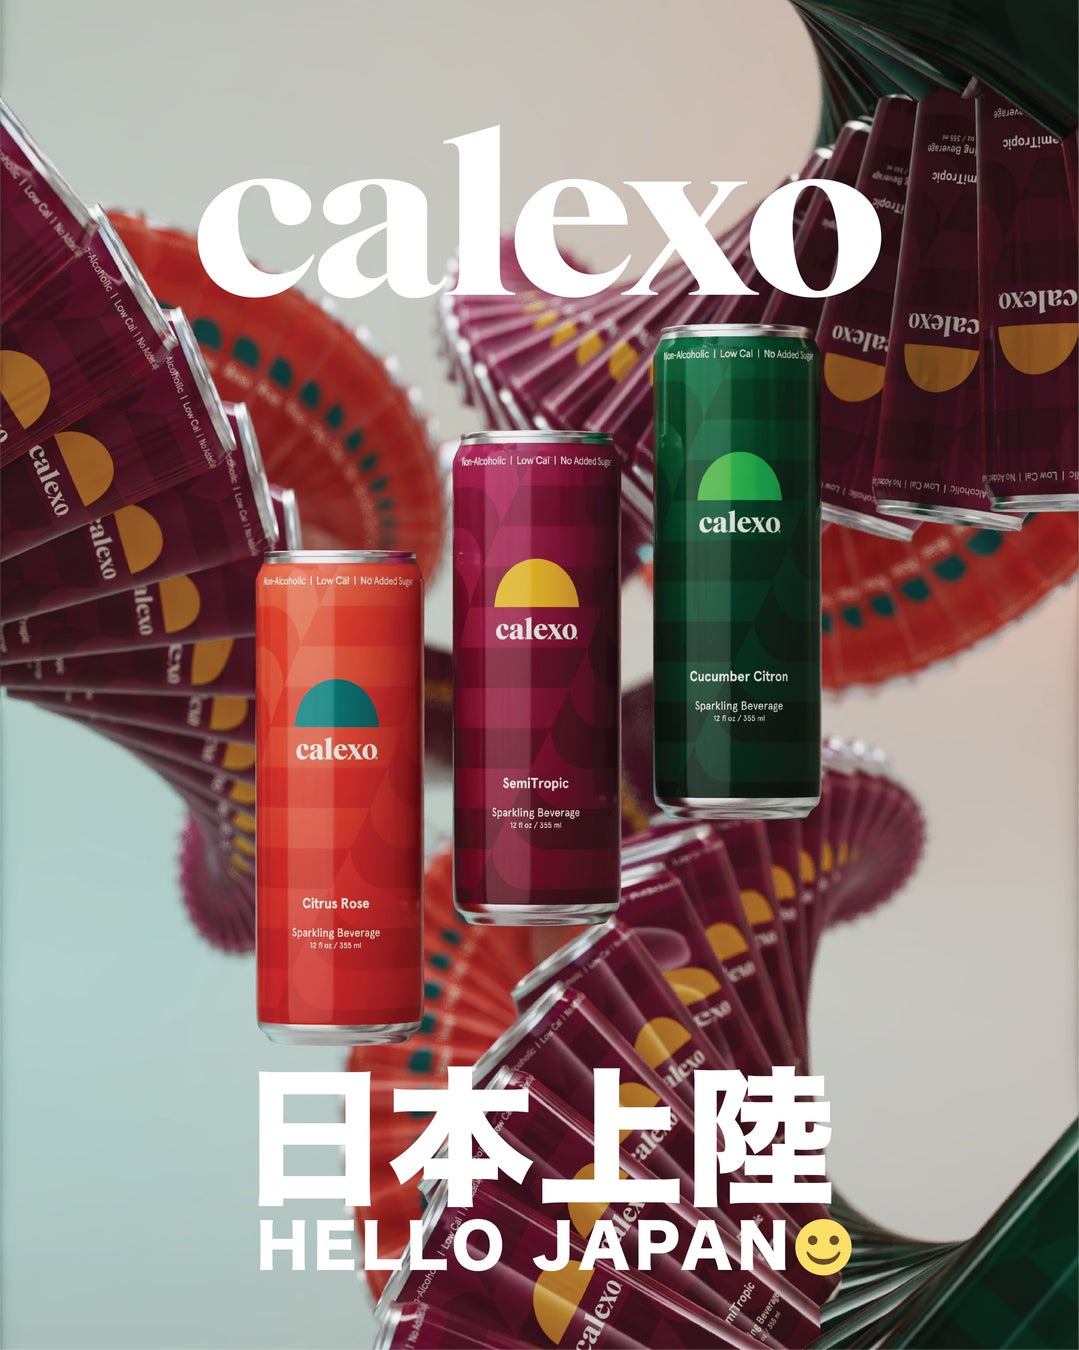 CALEXO JAPAN、LA発プレミアムノンアルカクテル「CALEXO」を日本発売決定！